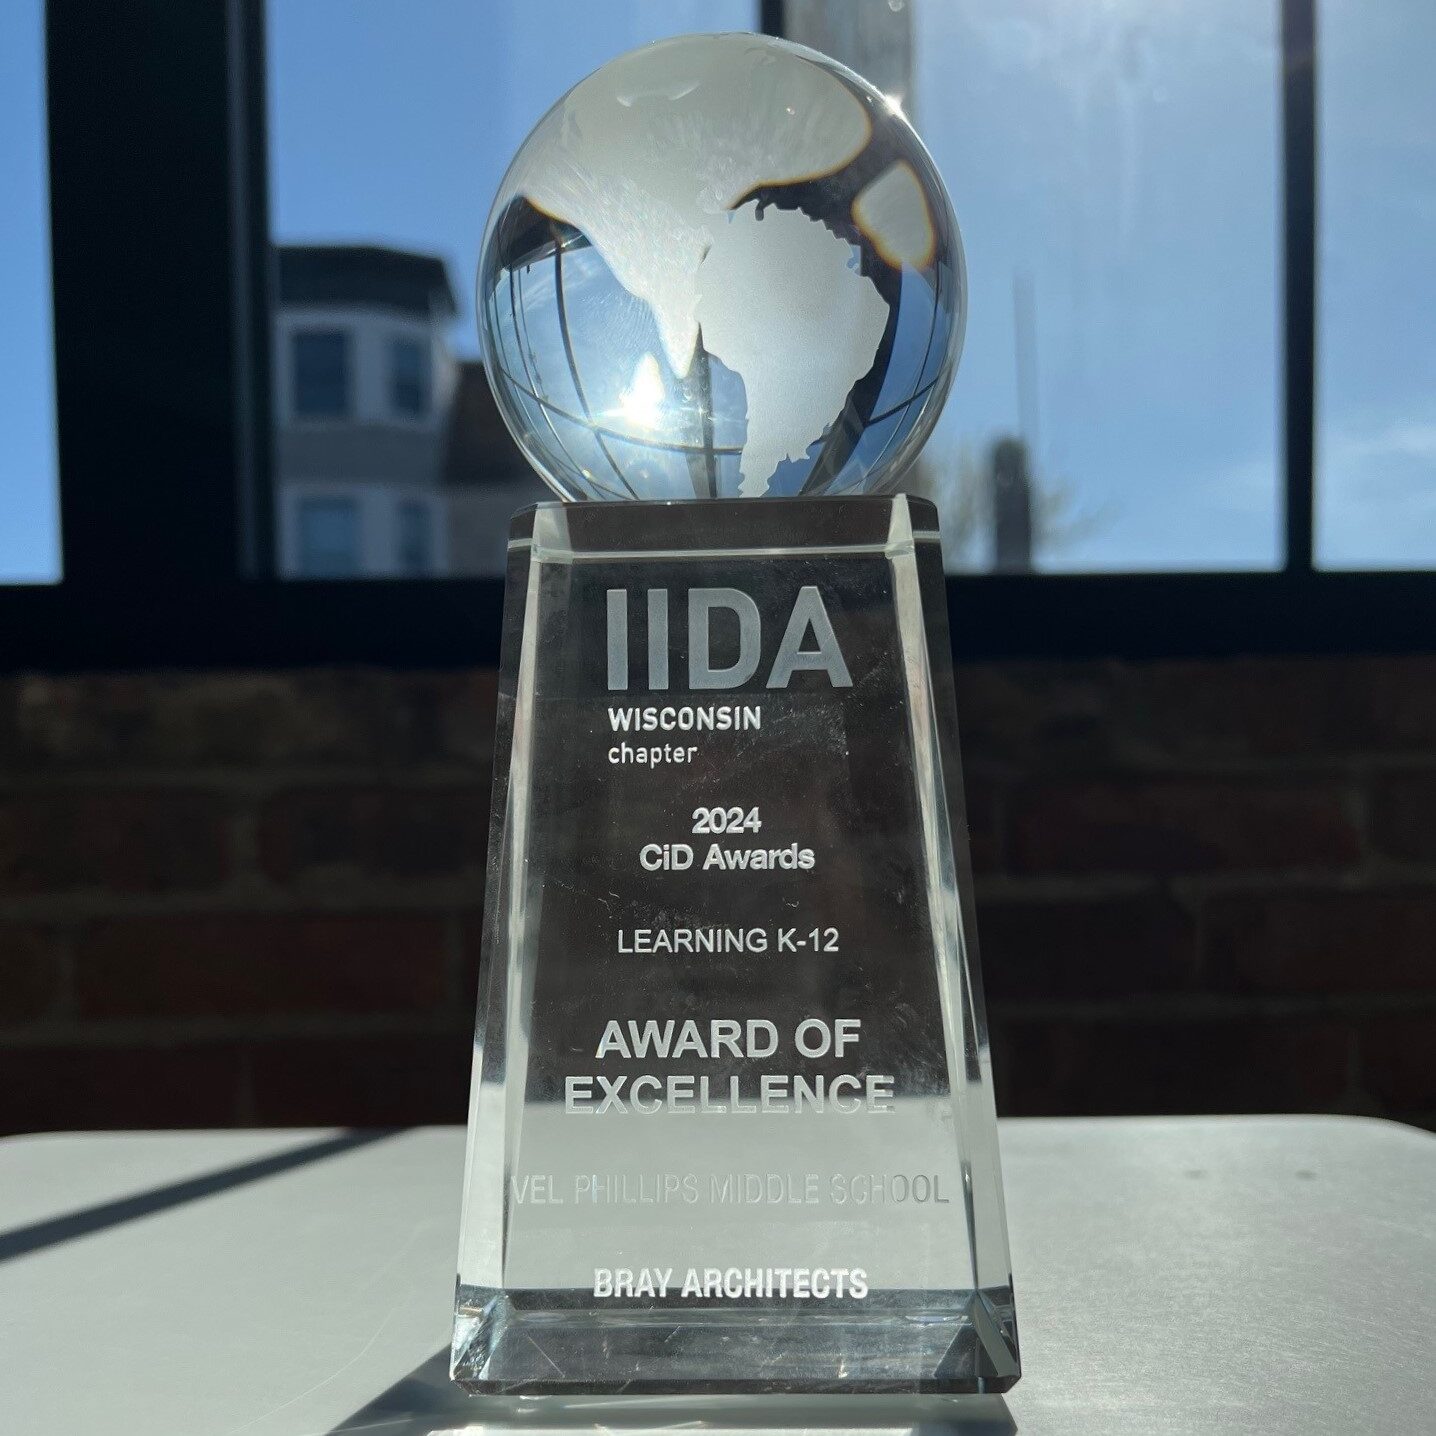 IIDA awards globe